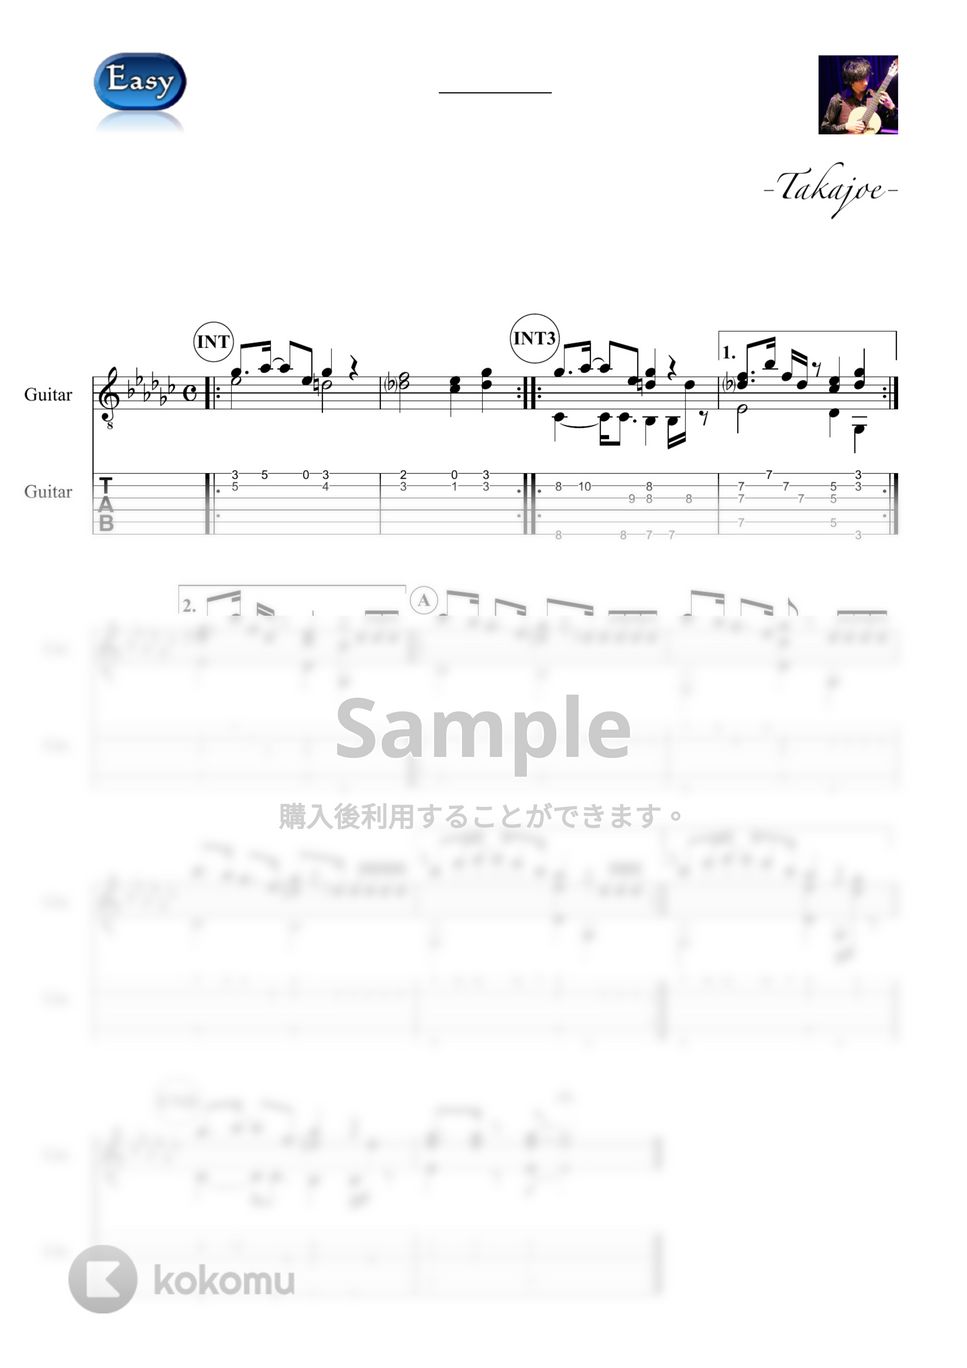 SIRUP - LOOP (Easy&Short Ver.) by 鷹城-Takajoe-